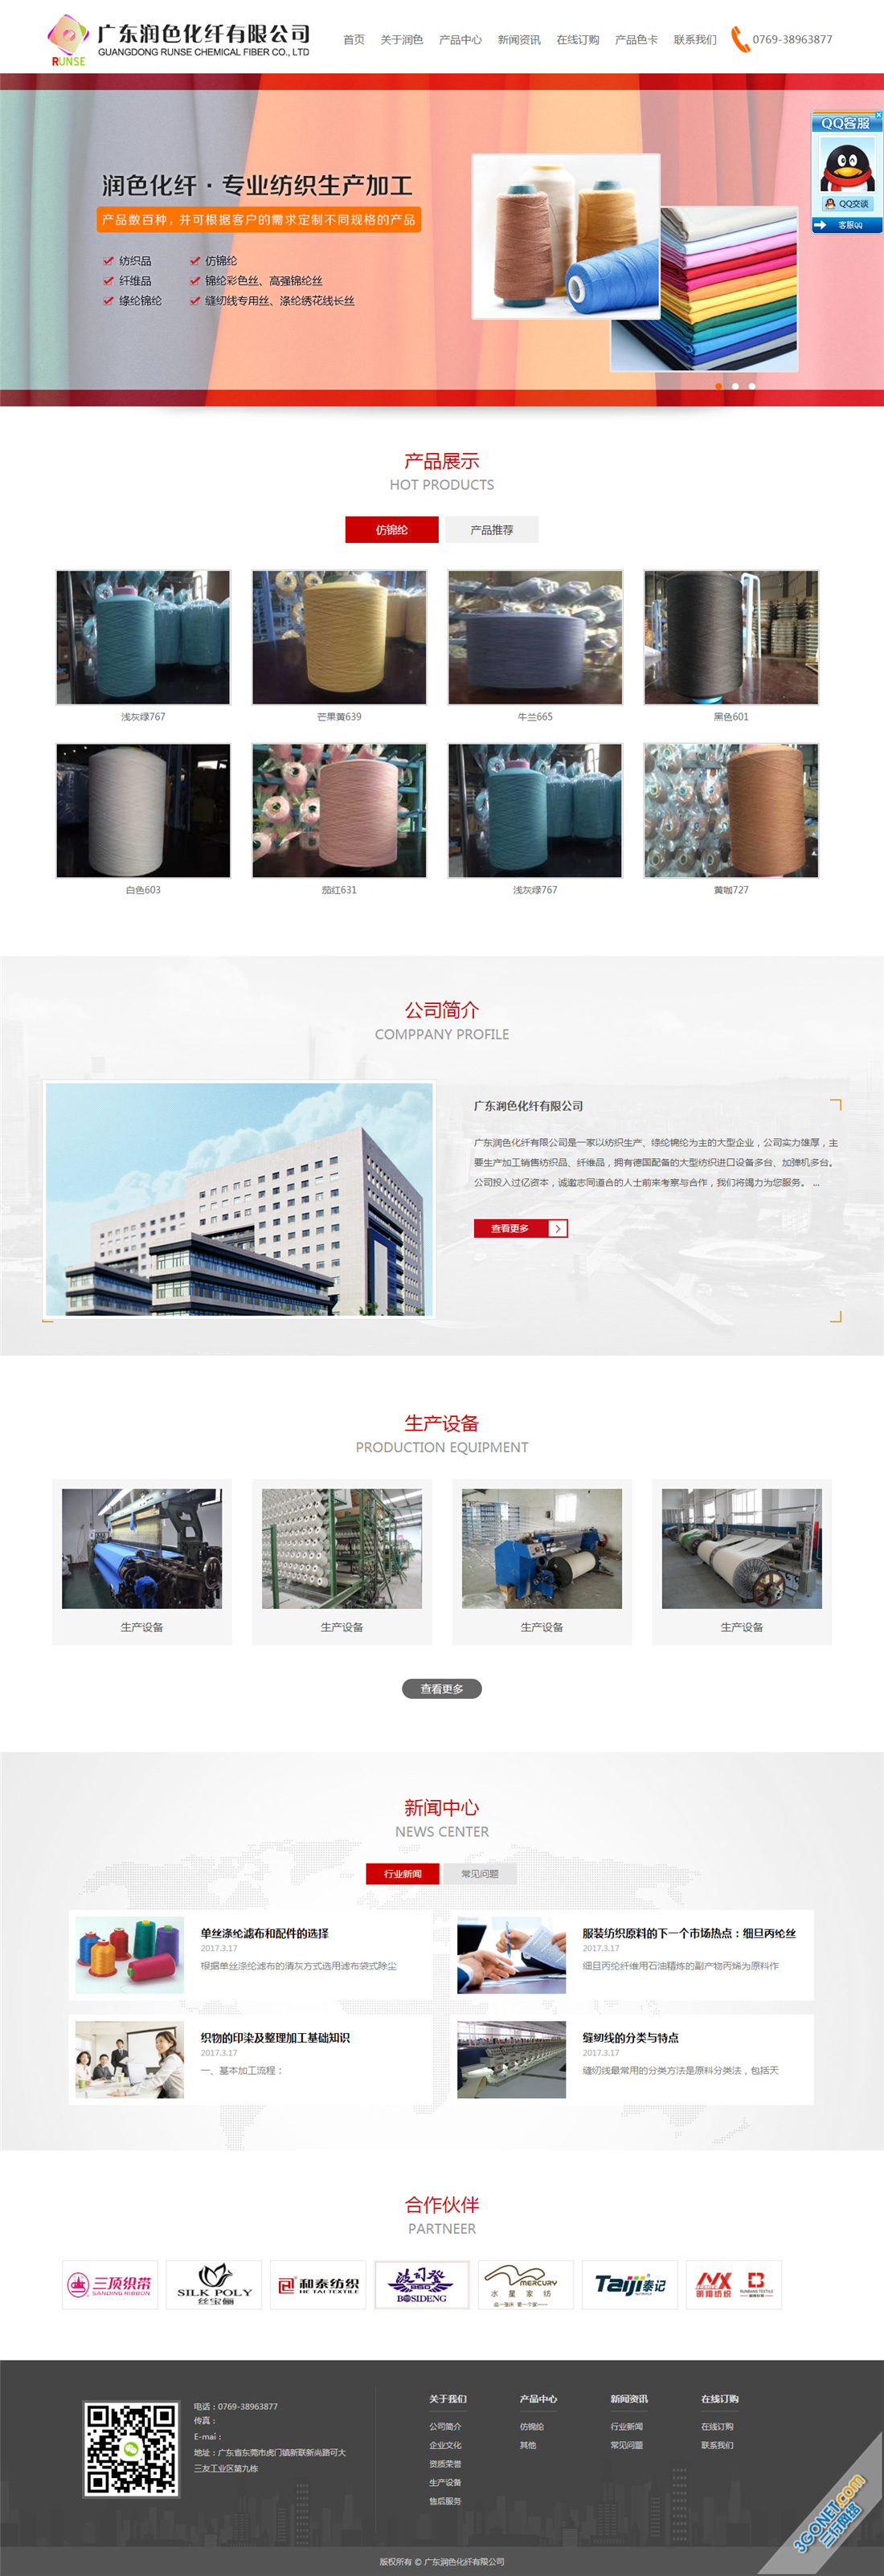 化纤纺织品网站设计